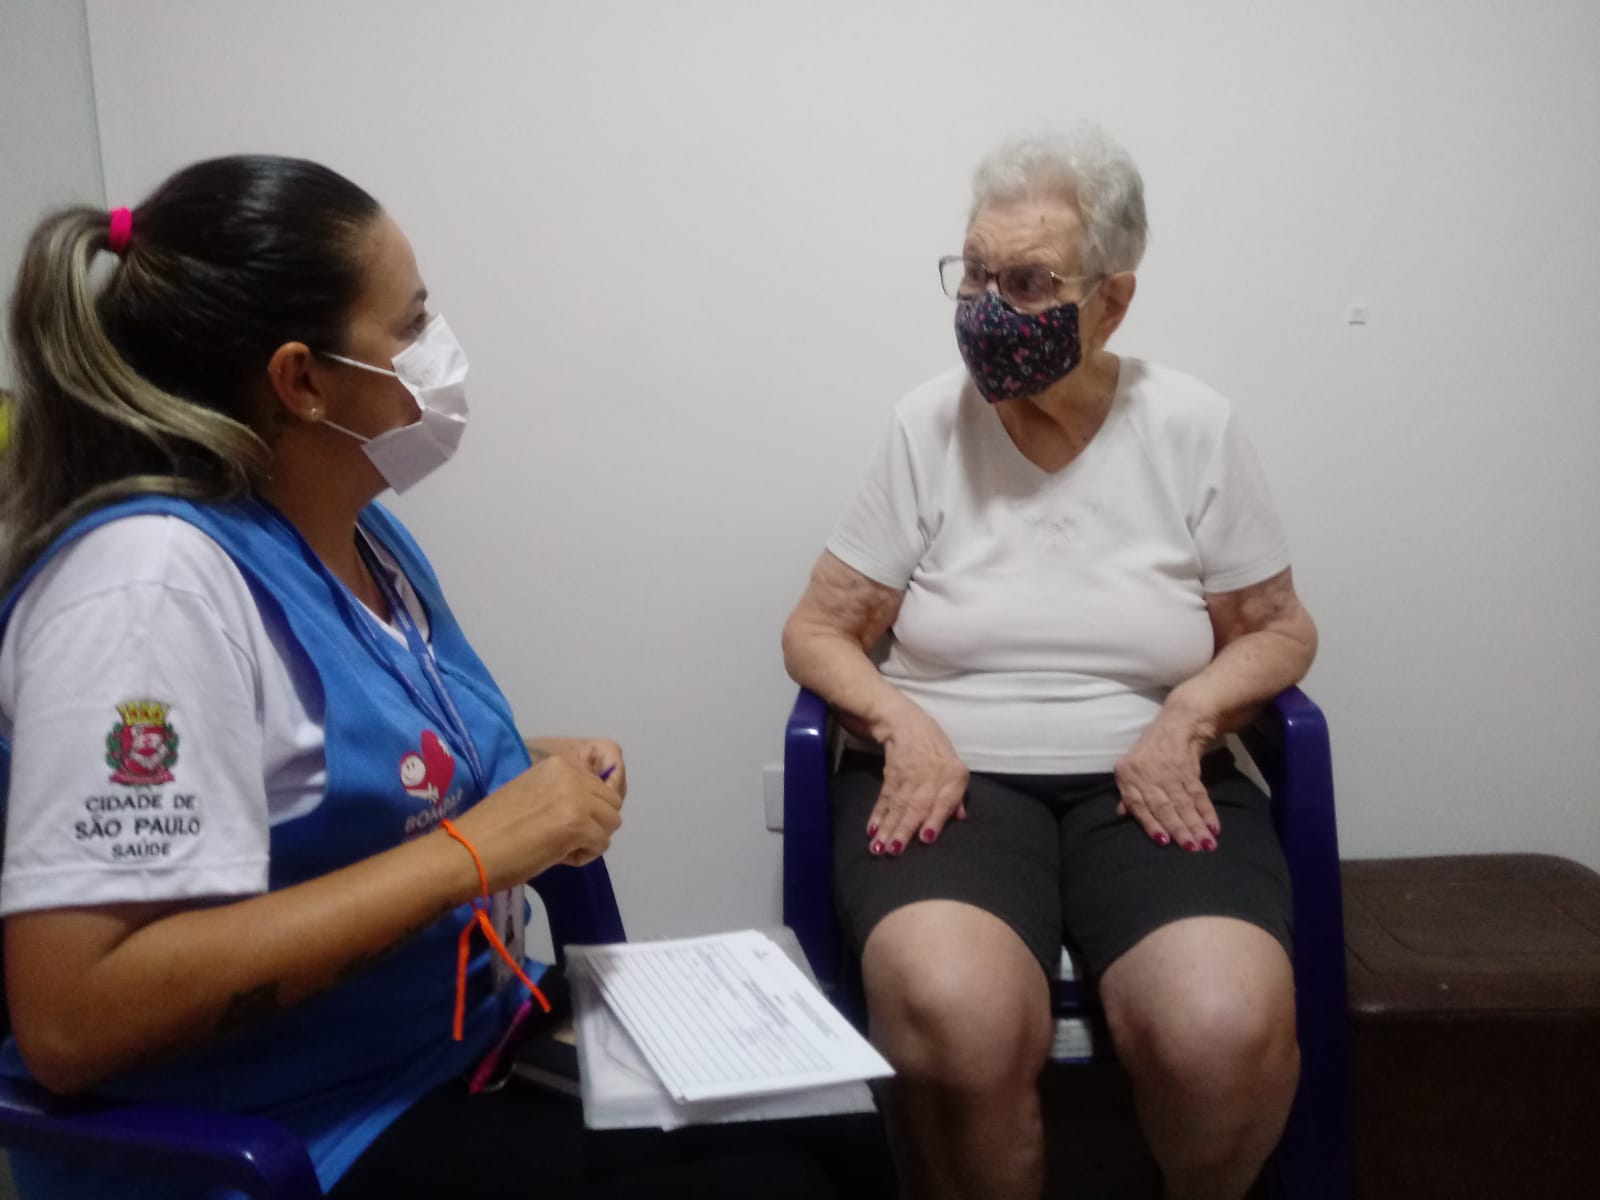 A foto mostra Gizelly, uma mulher jovem com uniforme da Secretaria Municipal da Saúde, interagindo com dona Miriam, uma mulher idosa; ambas estão de máscara e parecem conversar